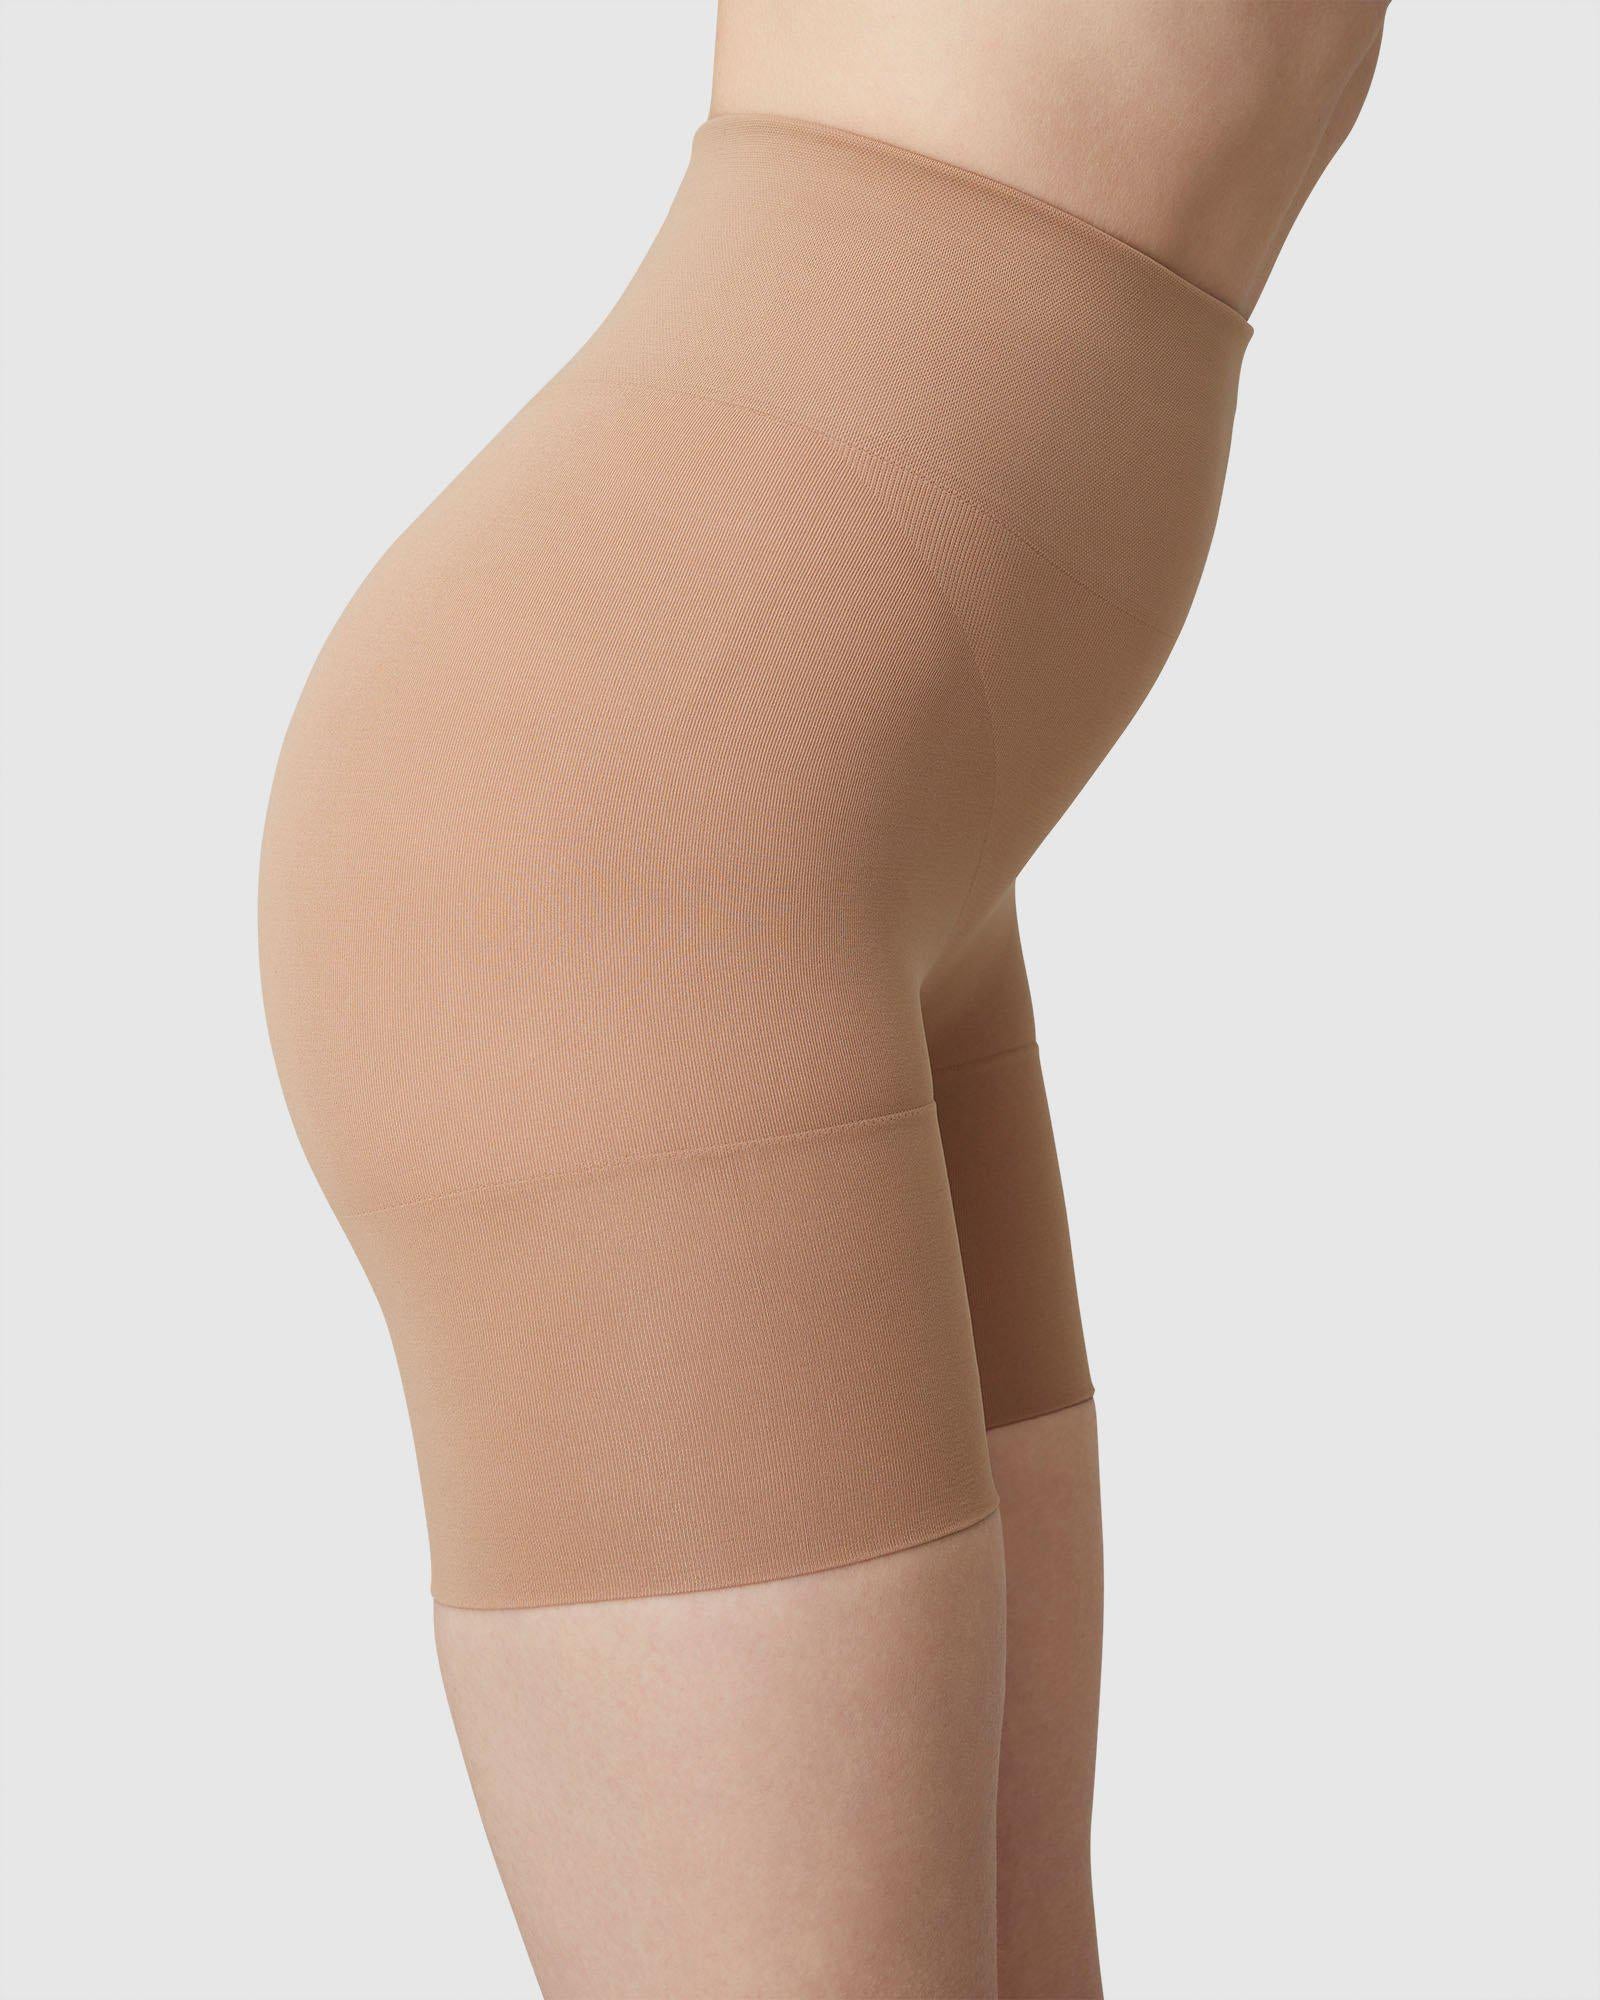 Swedish Stockings Livia Shaping Shorts - Shapewear 